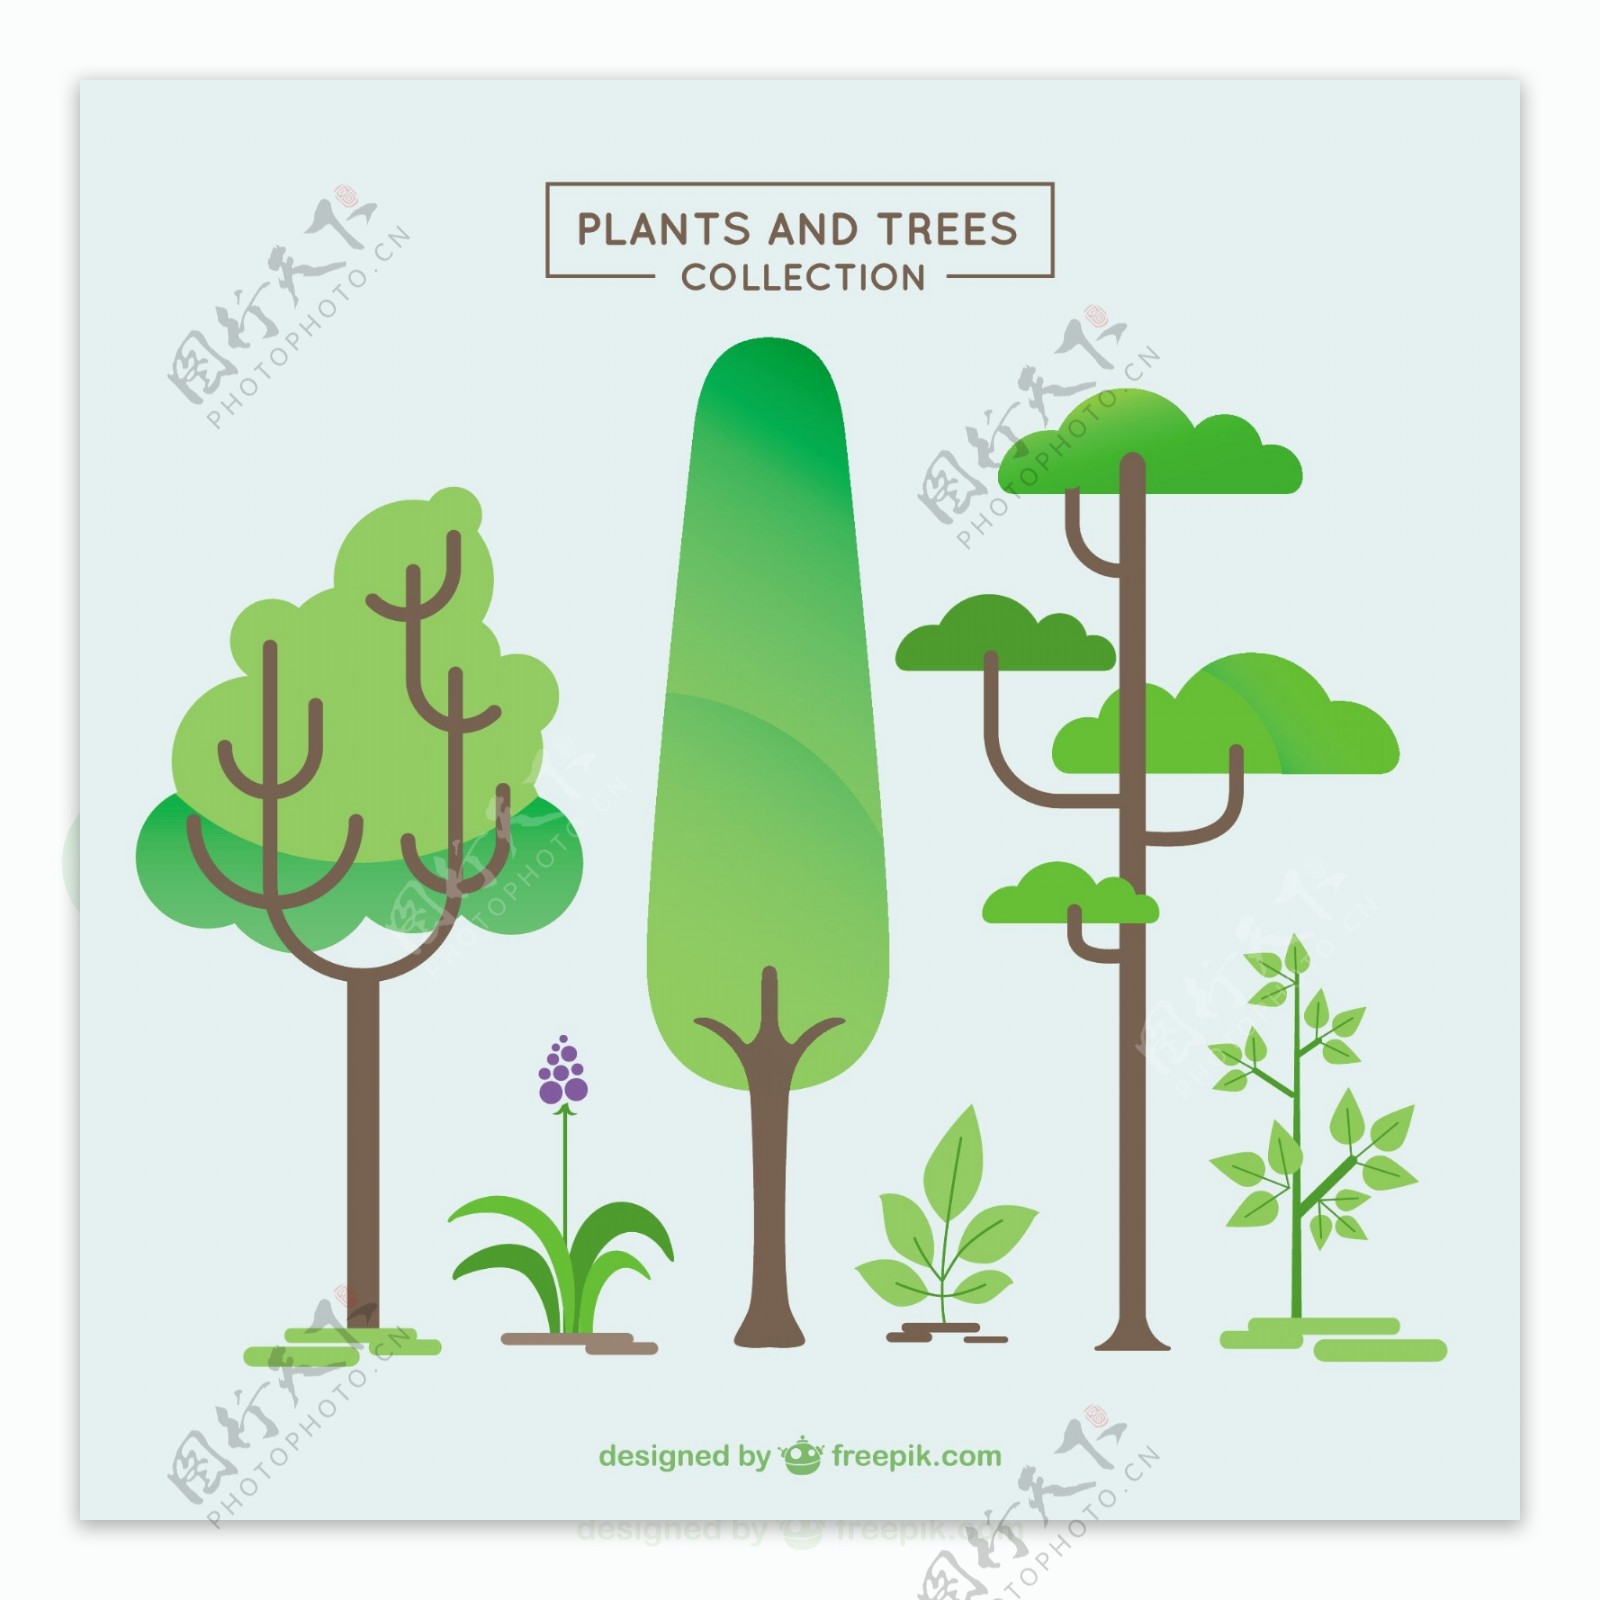 多种树木植物平面设计矢量素材